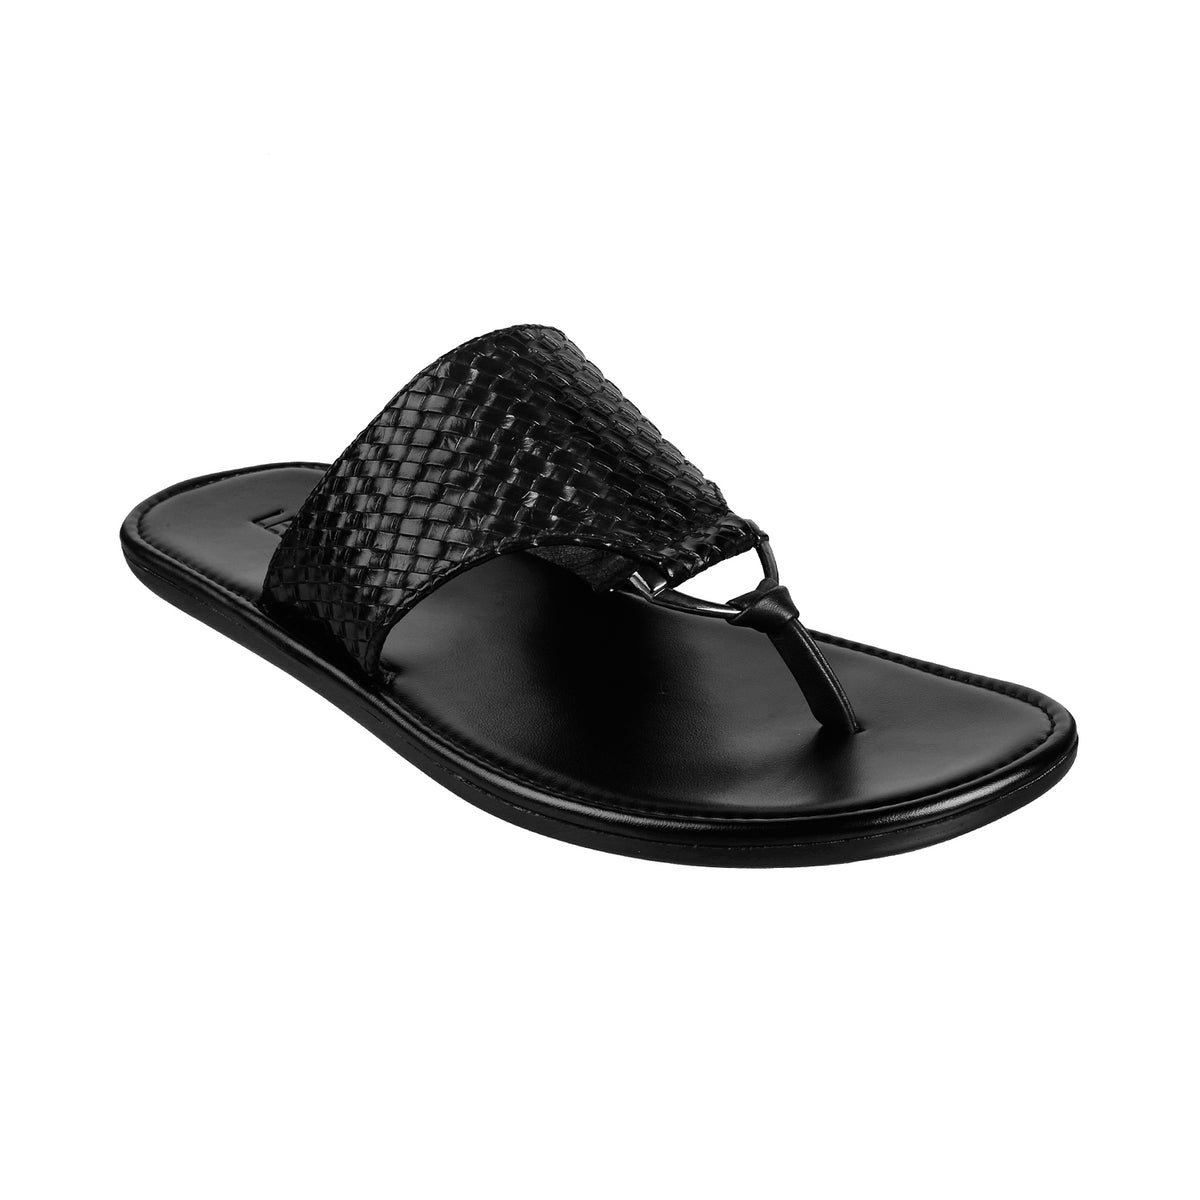 Ledero black flip flops for men | Buy 